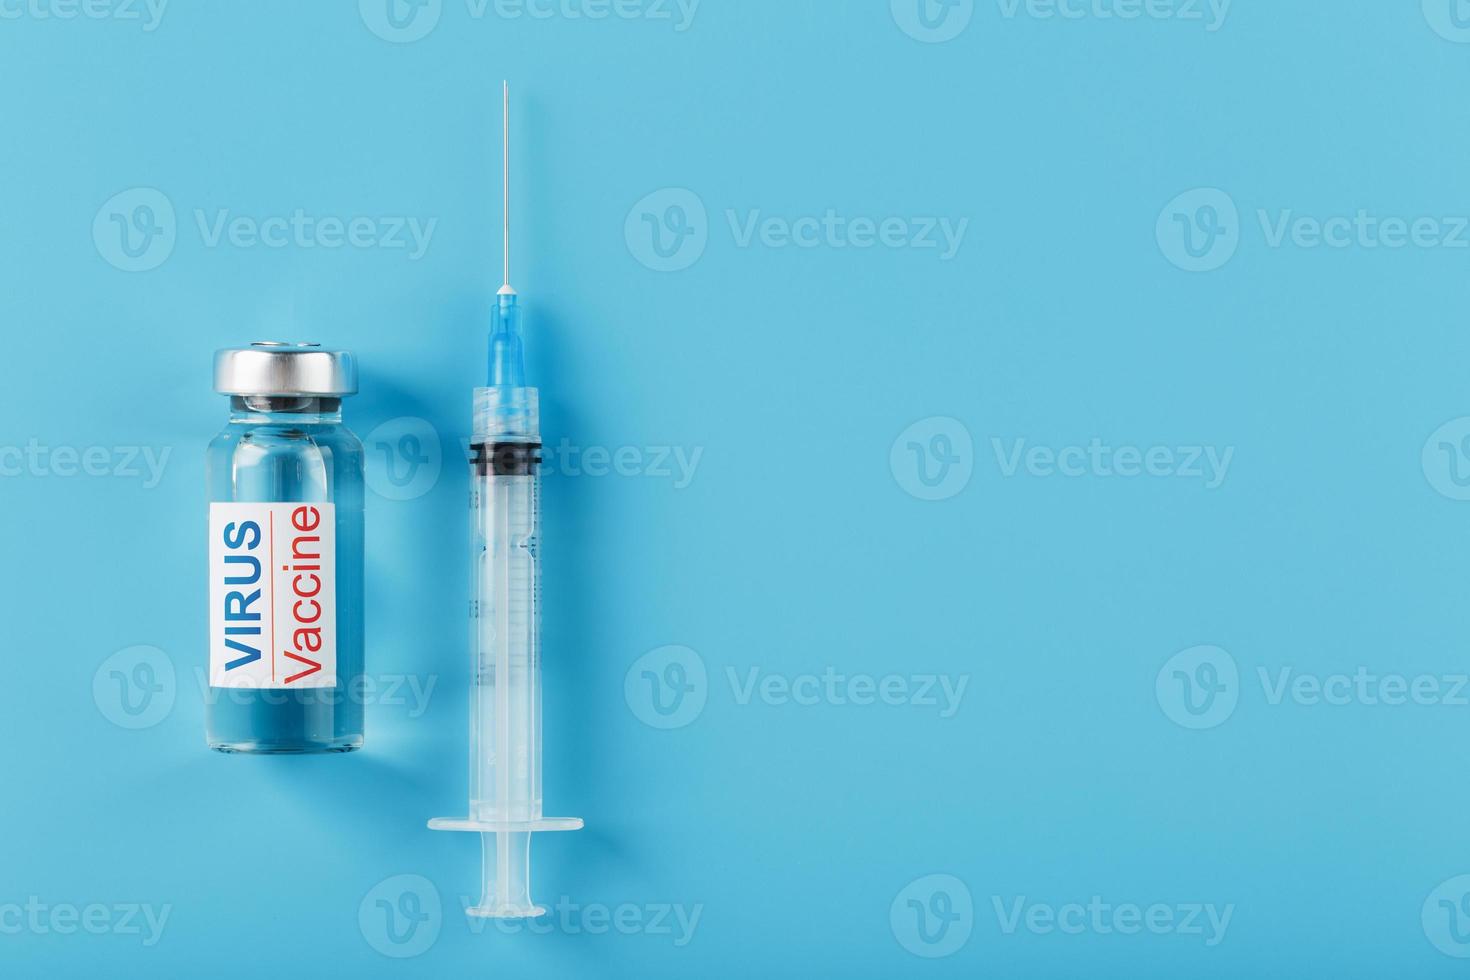 siringhe e fiala con il vaccino contro il virus a partire dal malattie su un' blu sfondo. foto